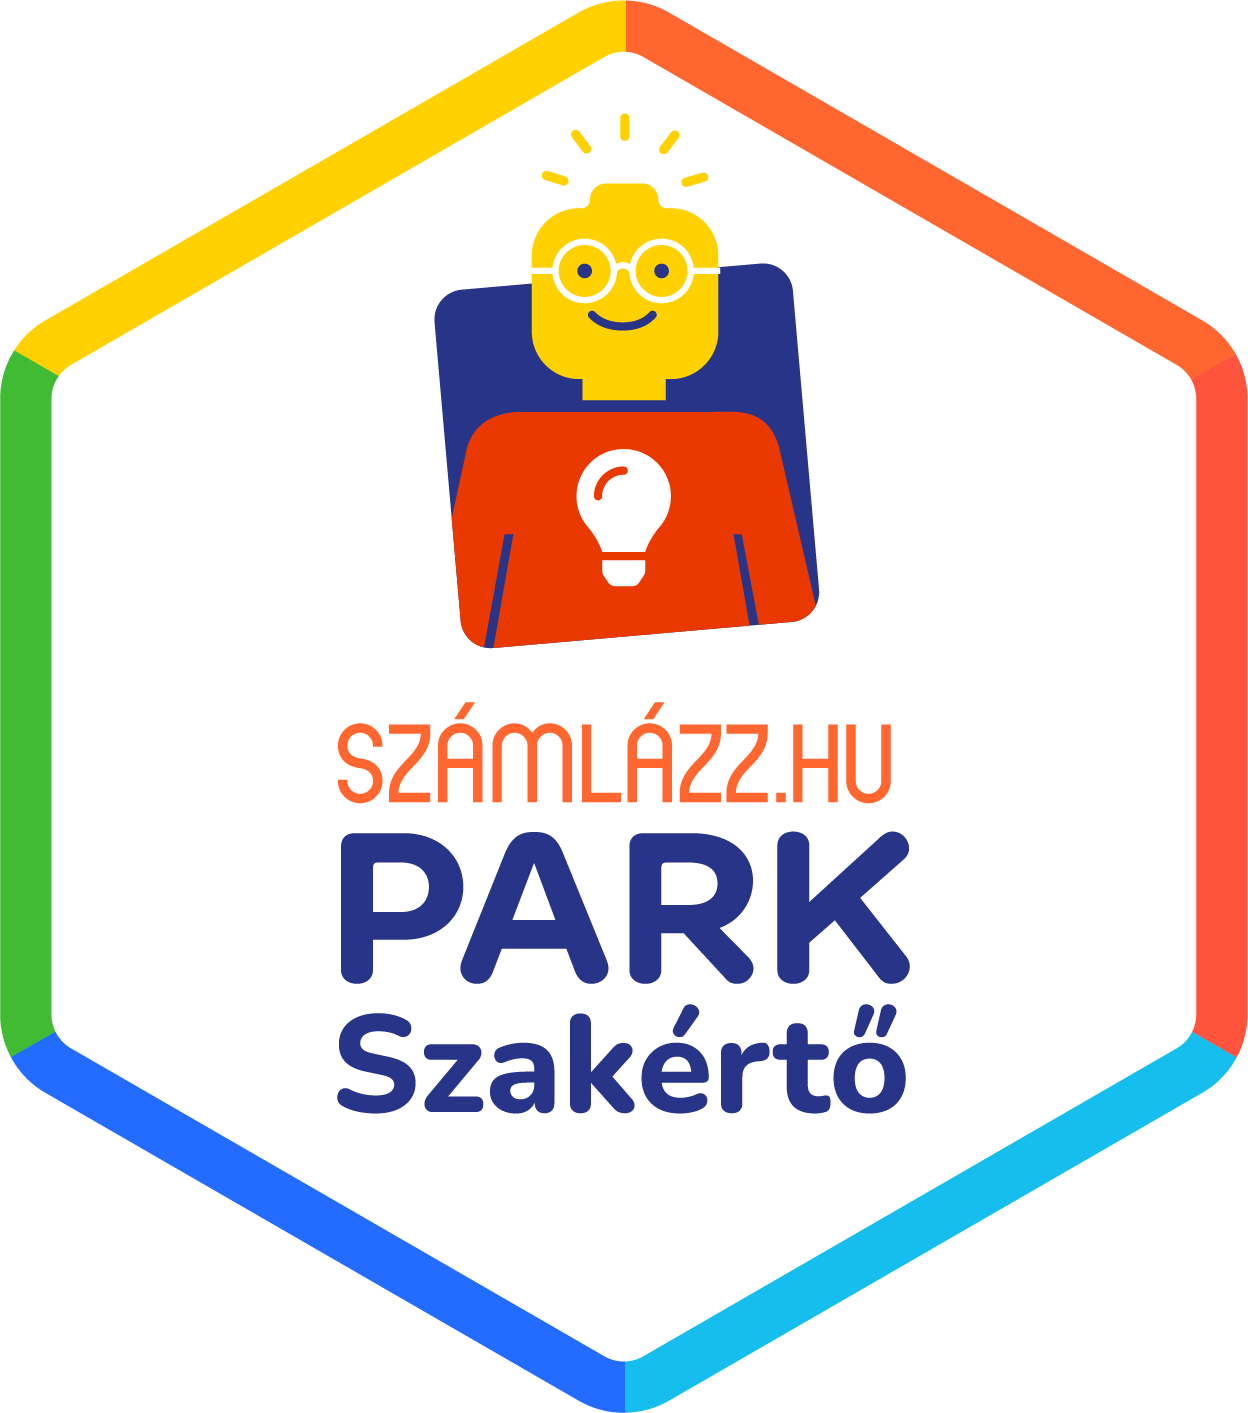 számlázz.hu park badge